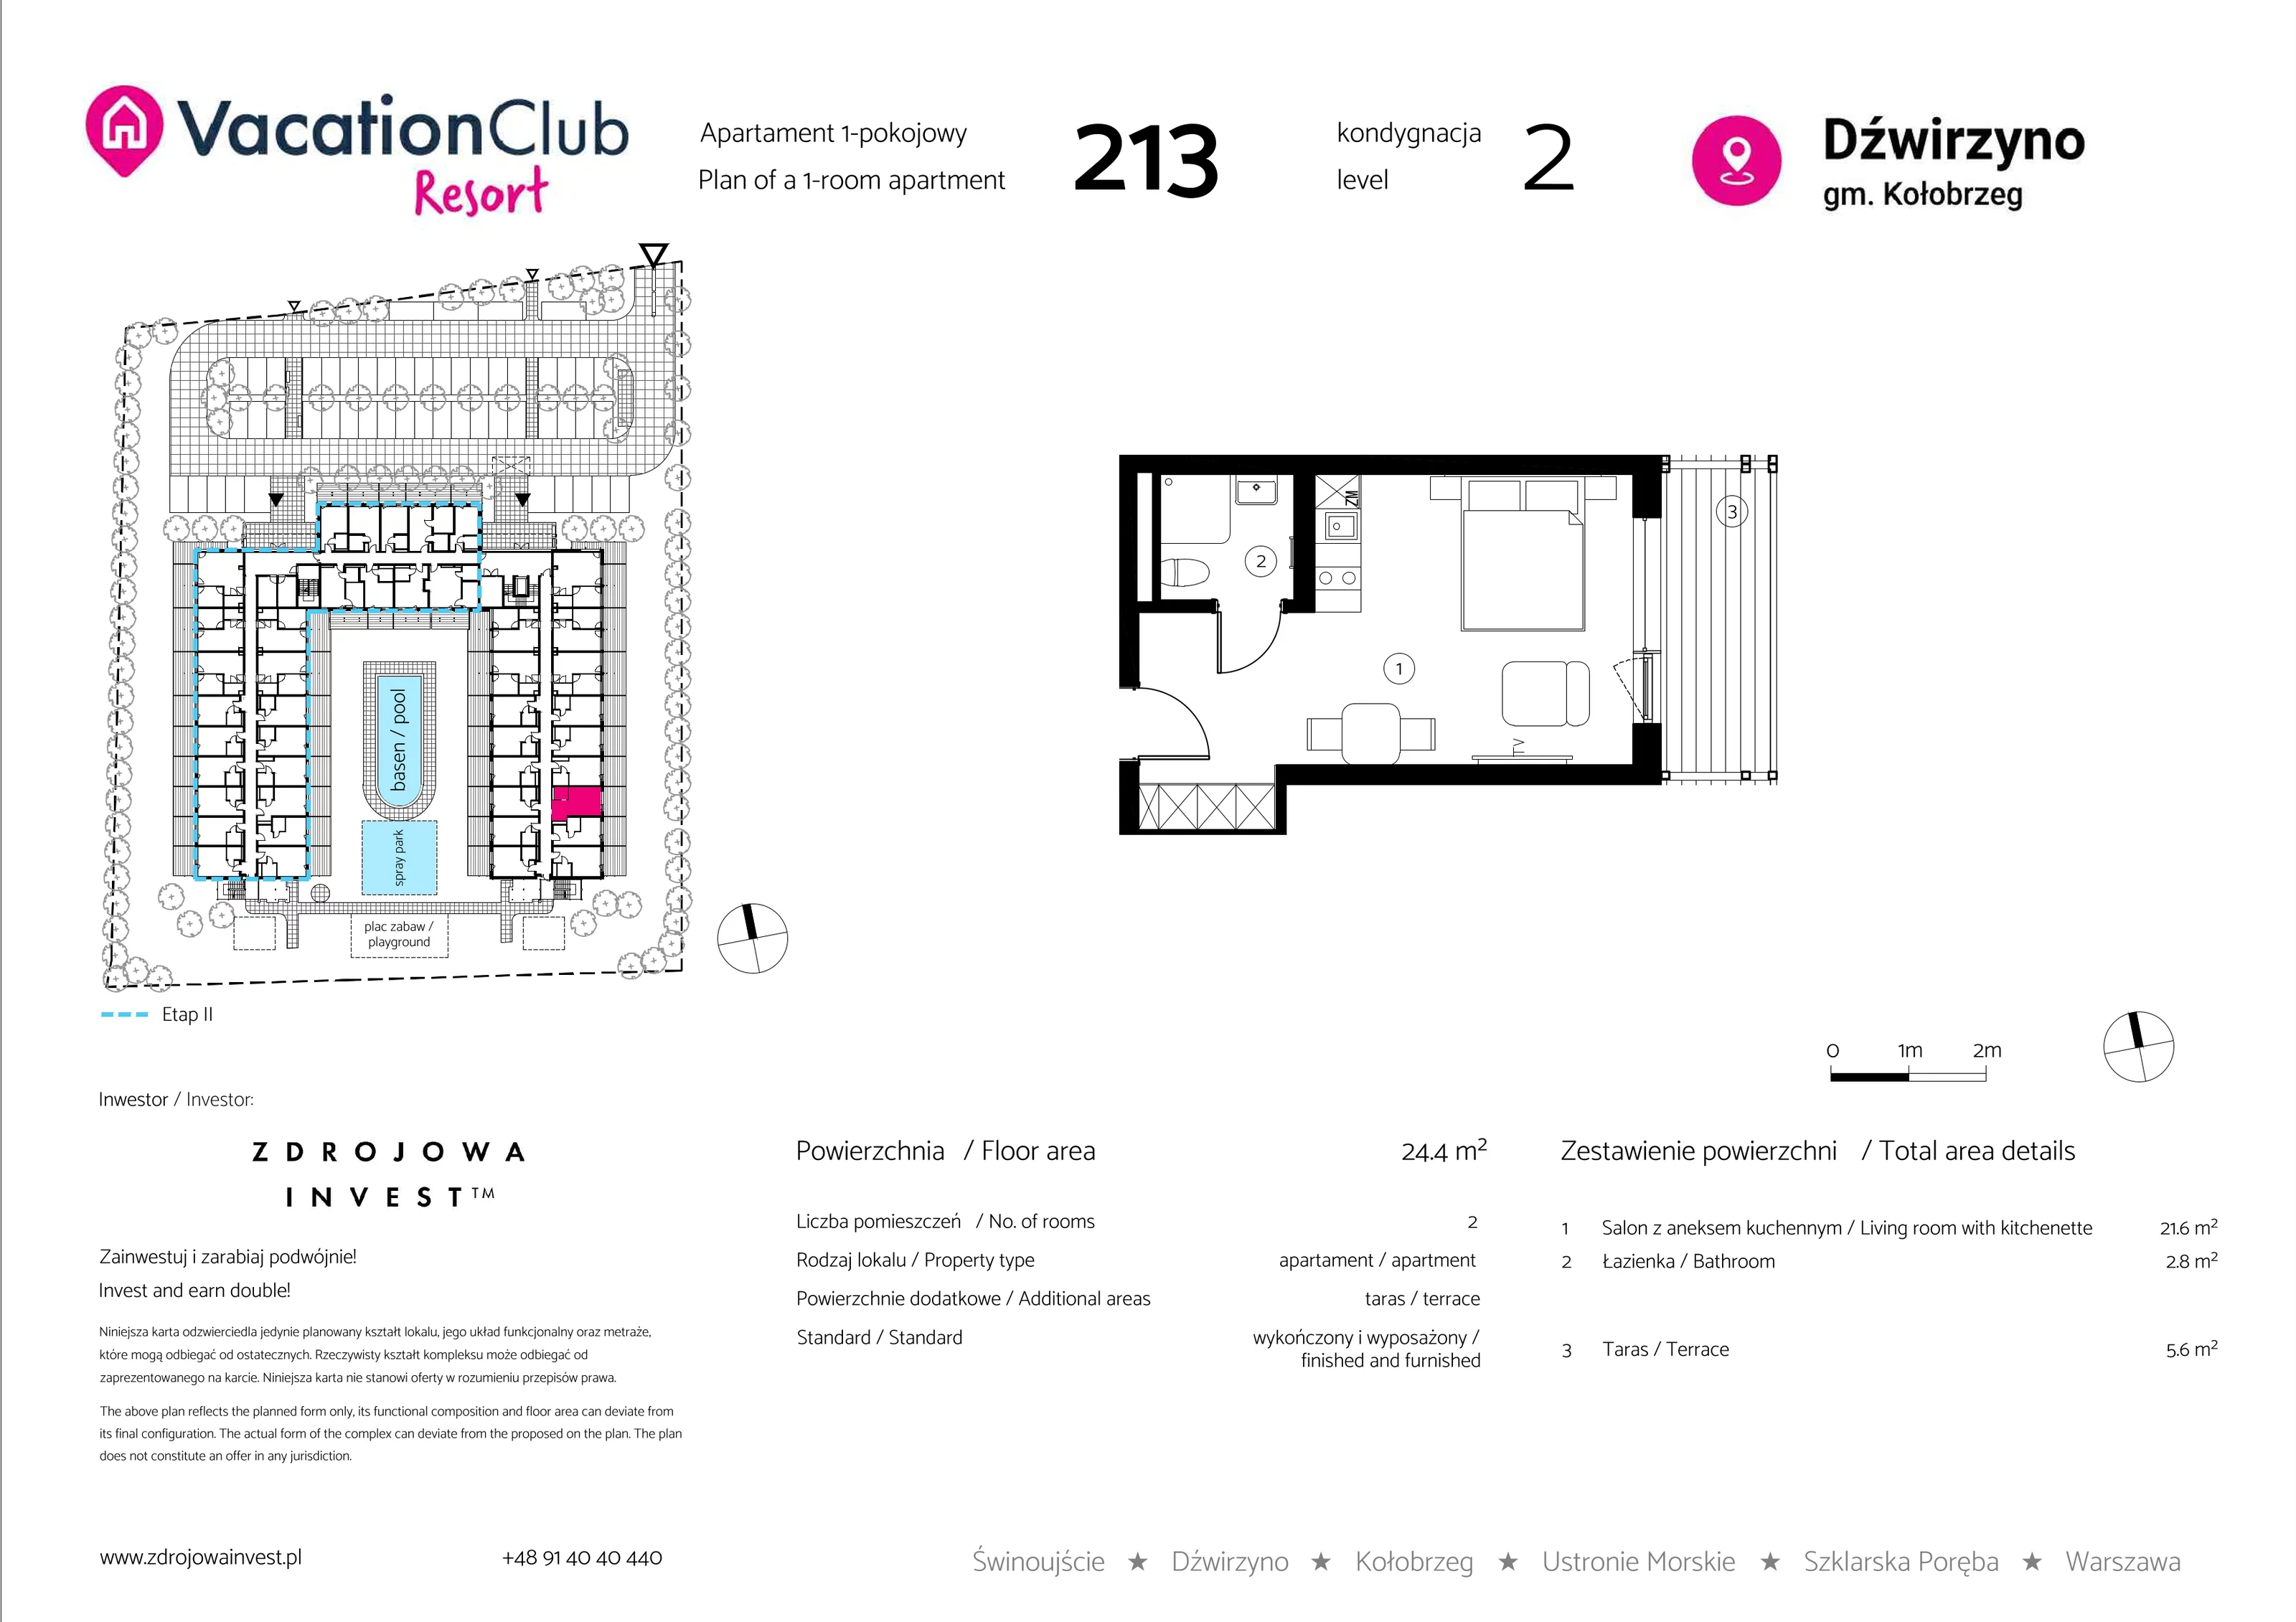 Apartament 24,40 m², piętro 1, oferta nr 213, Vacation Club Resort - apartamenty wakacyjne, Dźwirzyno, ul. Wczasowa 8